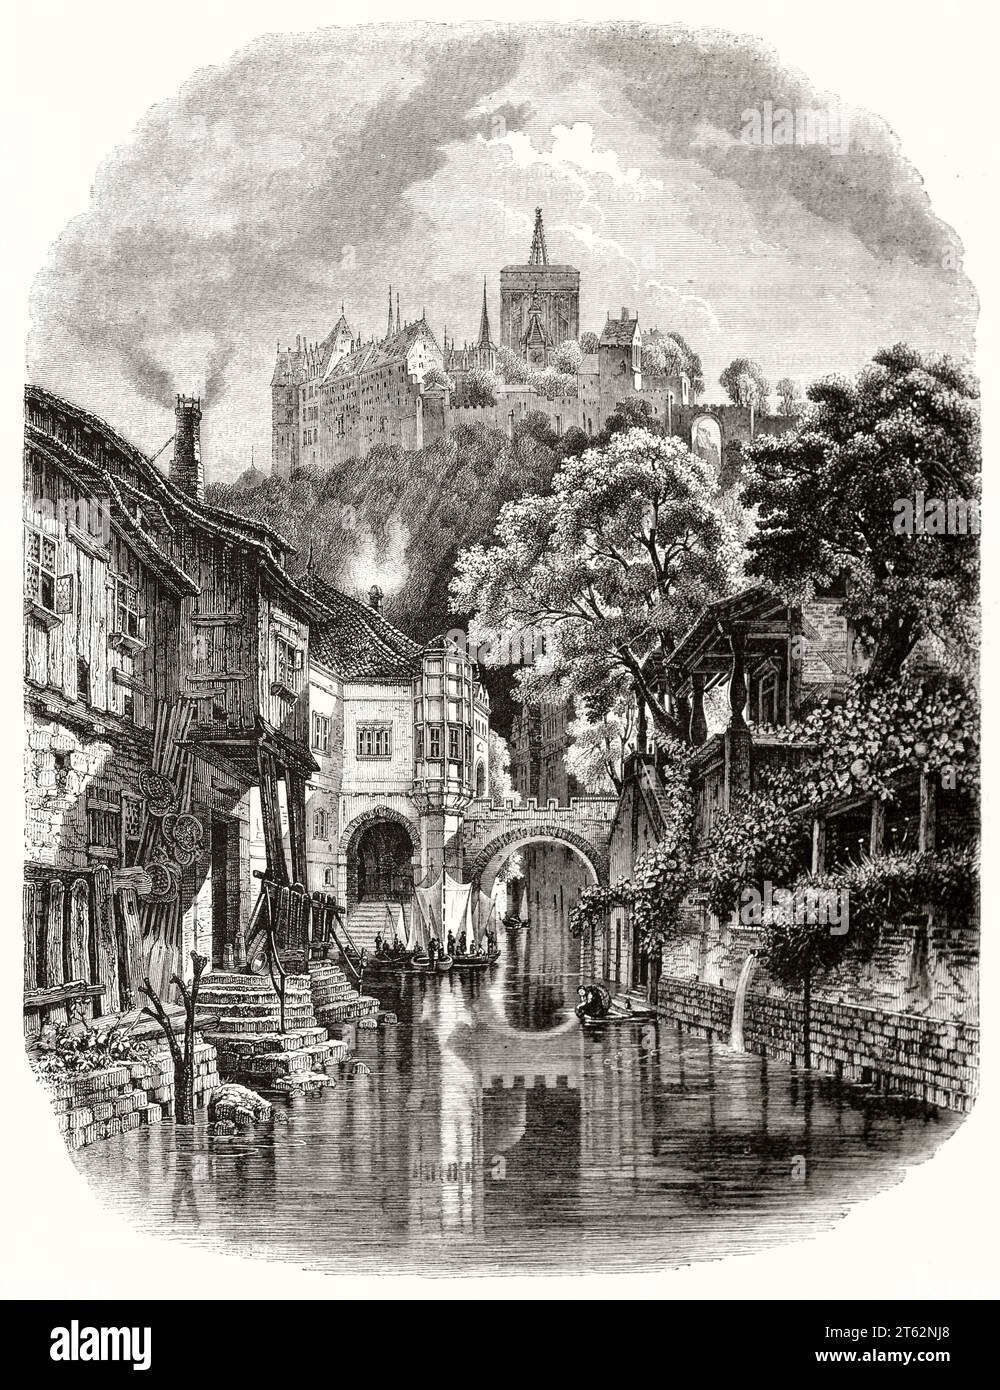 Vue ancienne de Meissen, Allemagne. Par Freeman et Quaterly, publ. Sur magasin pittoresque, Paris, 1849 Banque D'Images